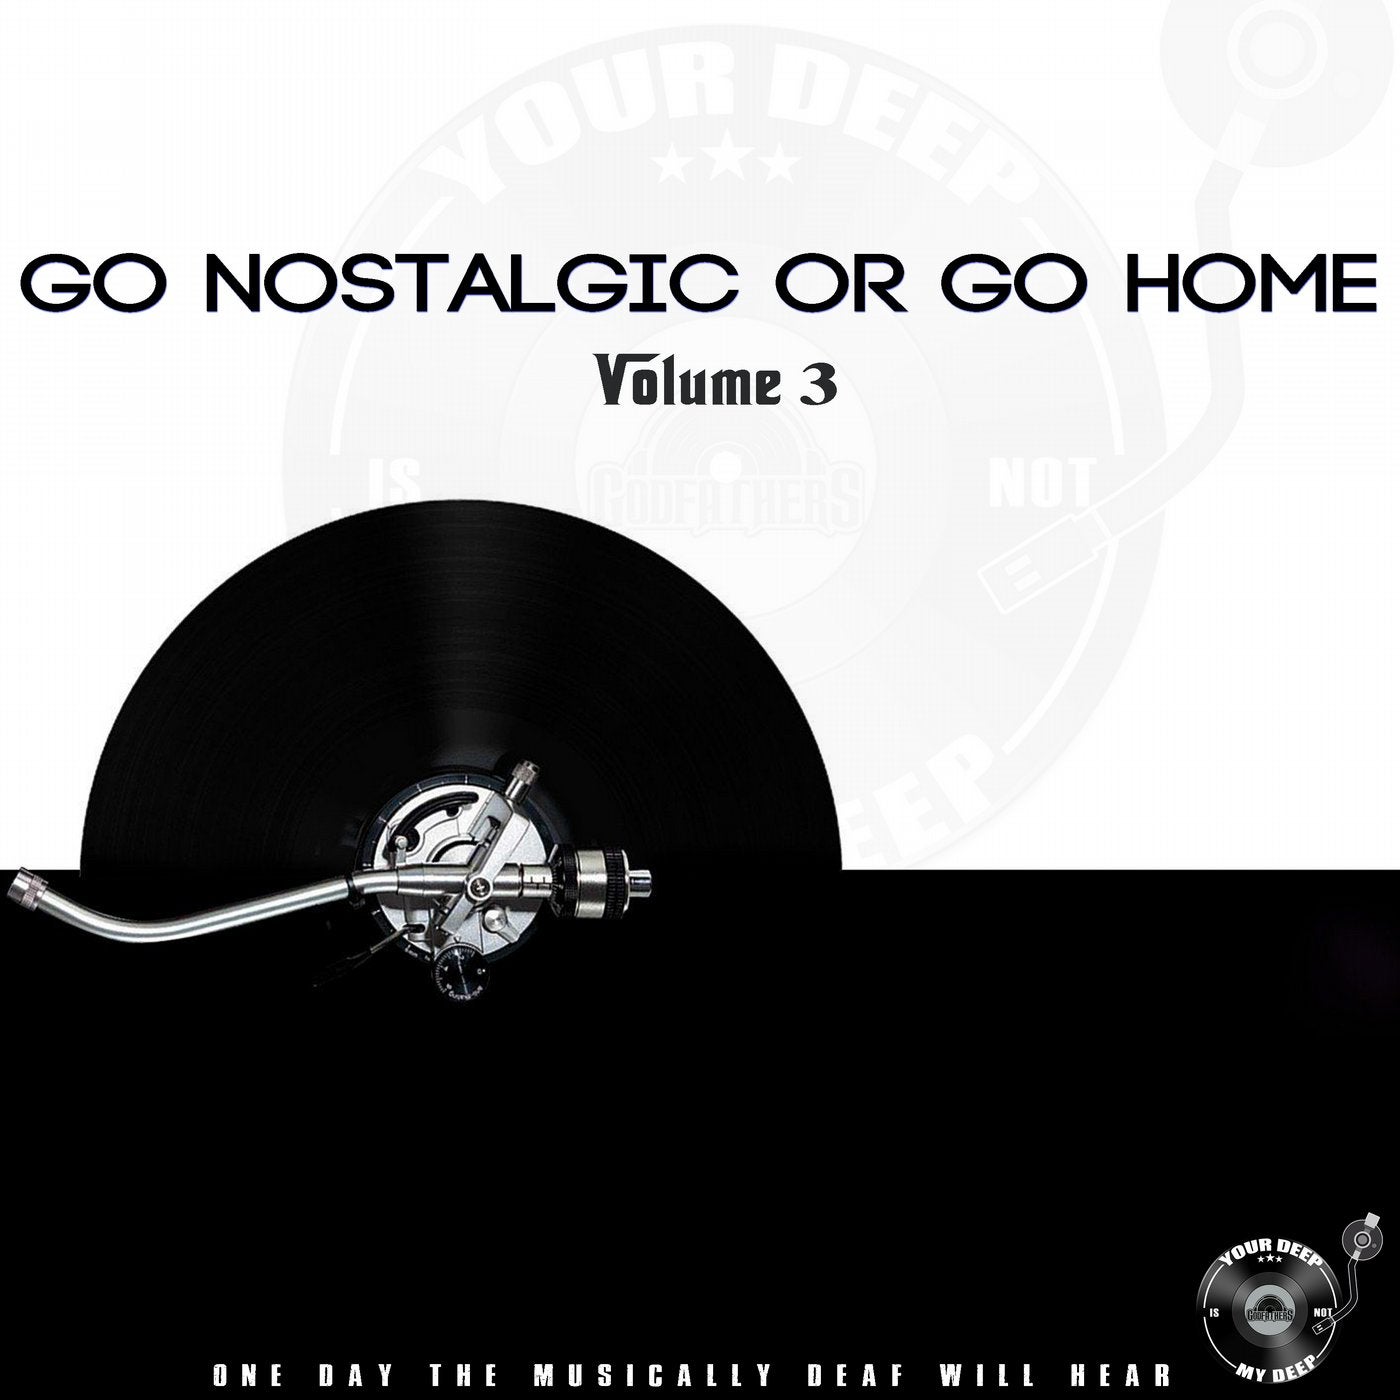 Go Nostalgic or Go Home, Vol. 3